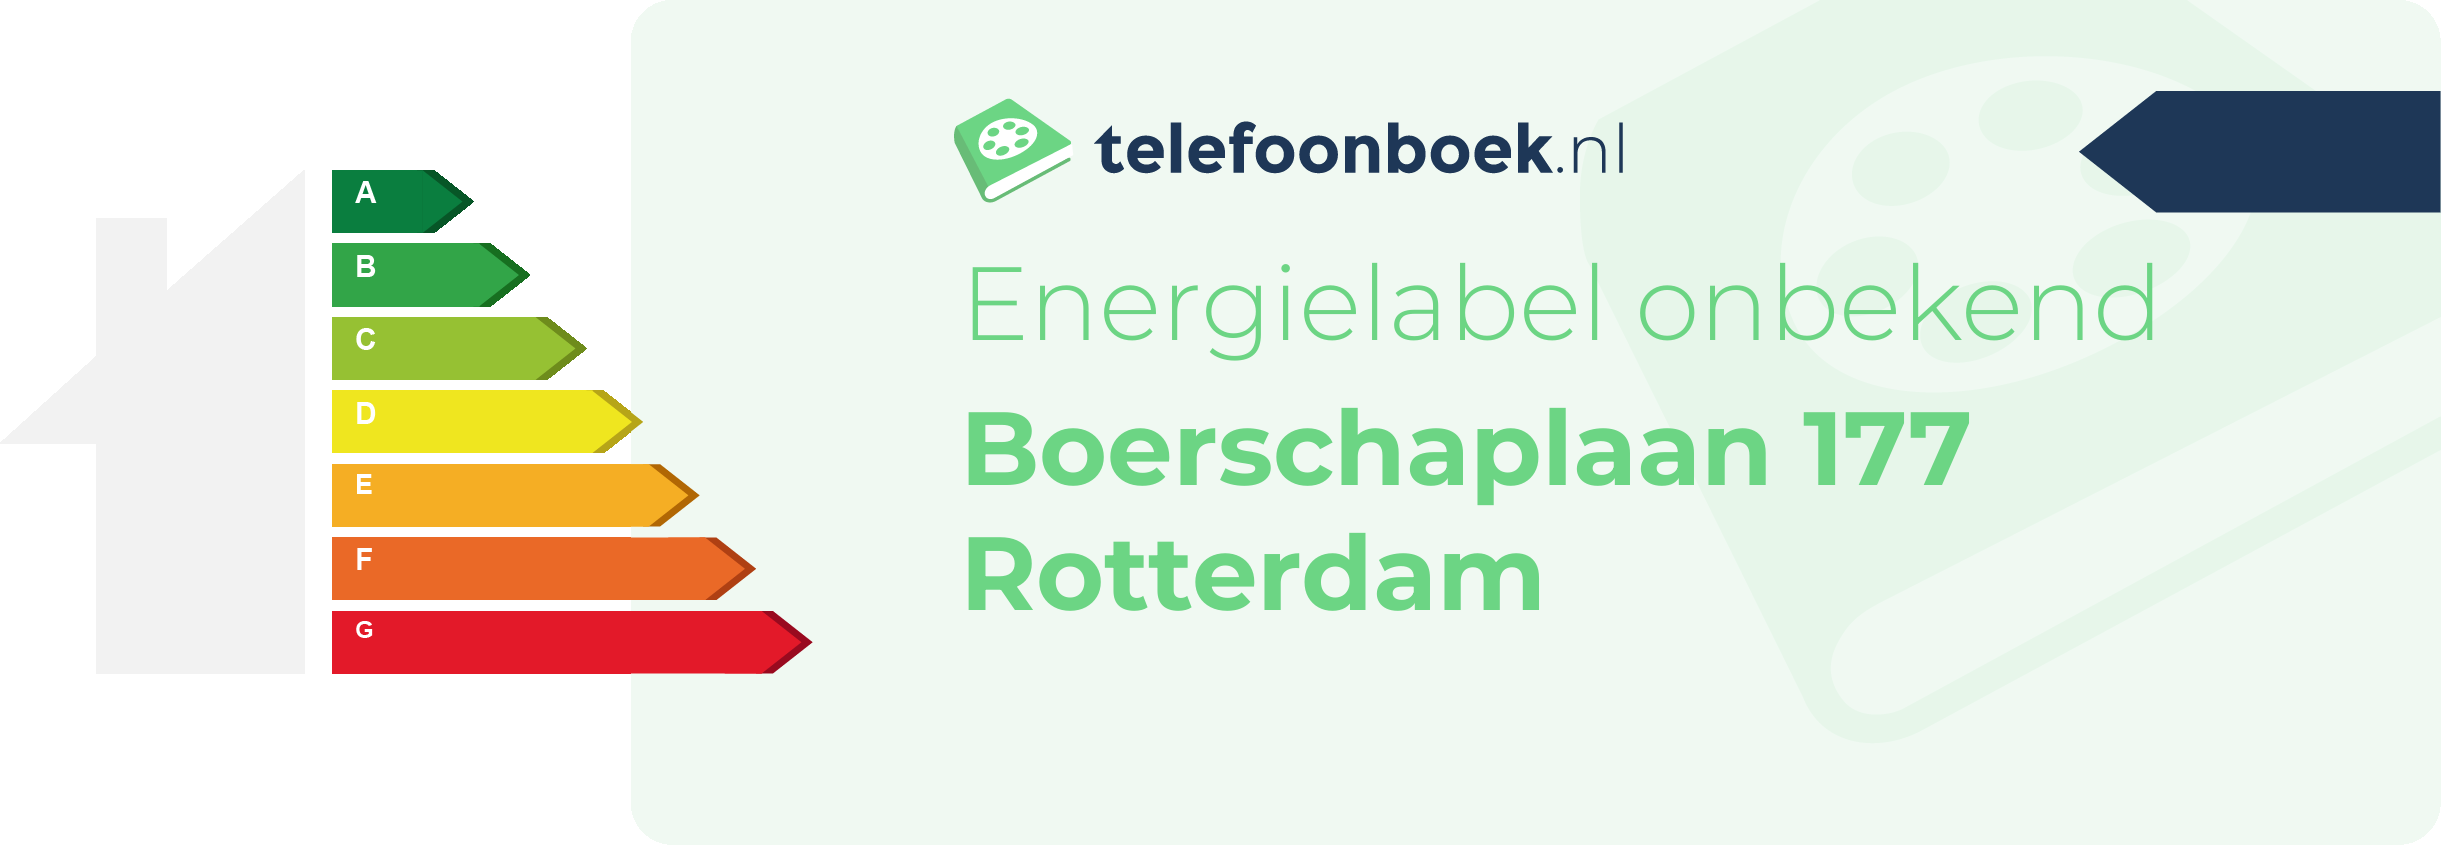 Energielabel Boerschaplaan 177 Rotterdam